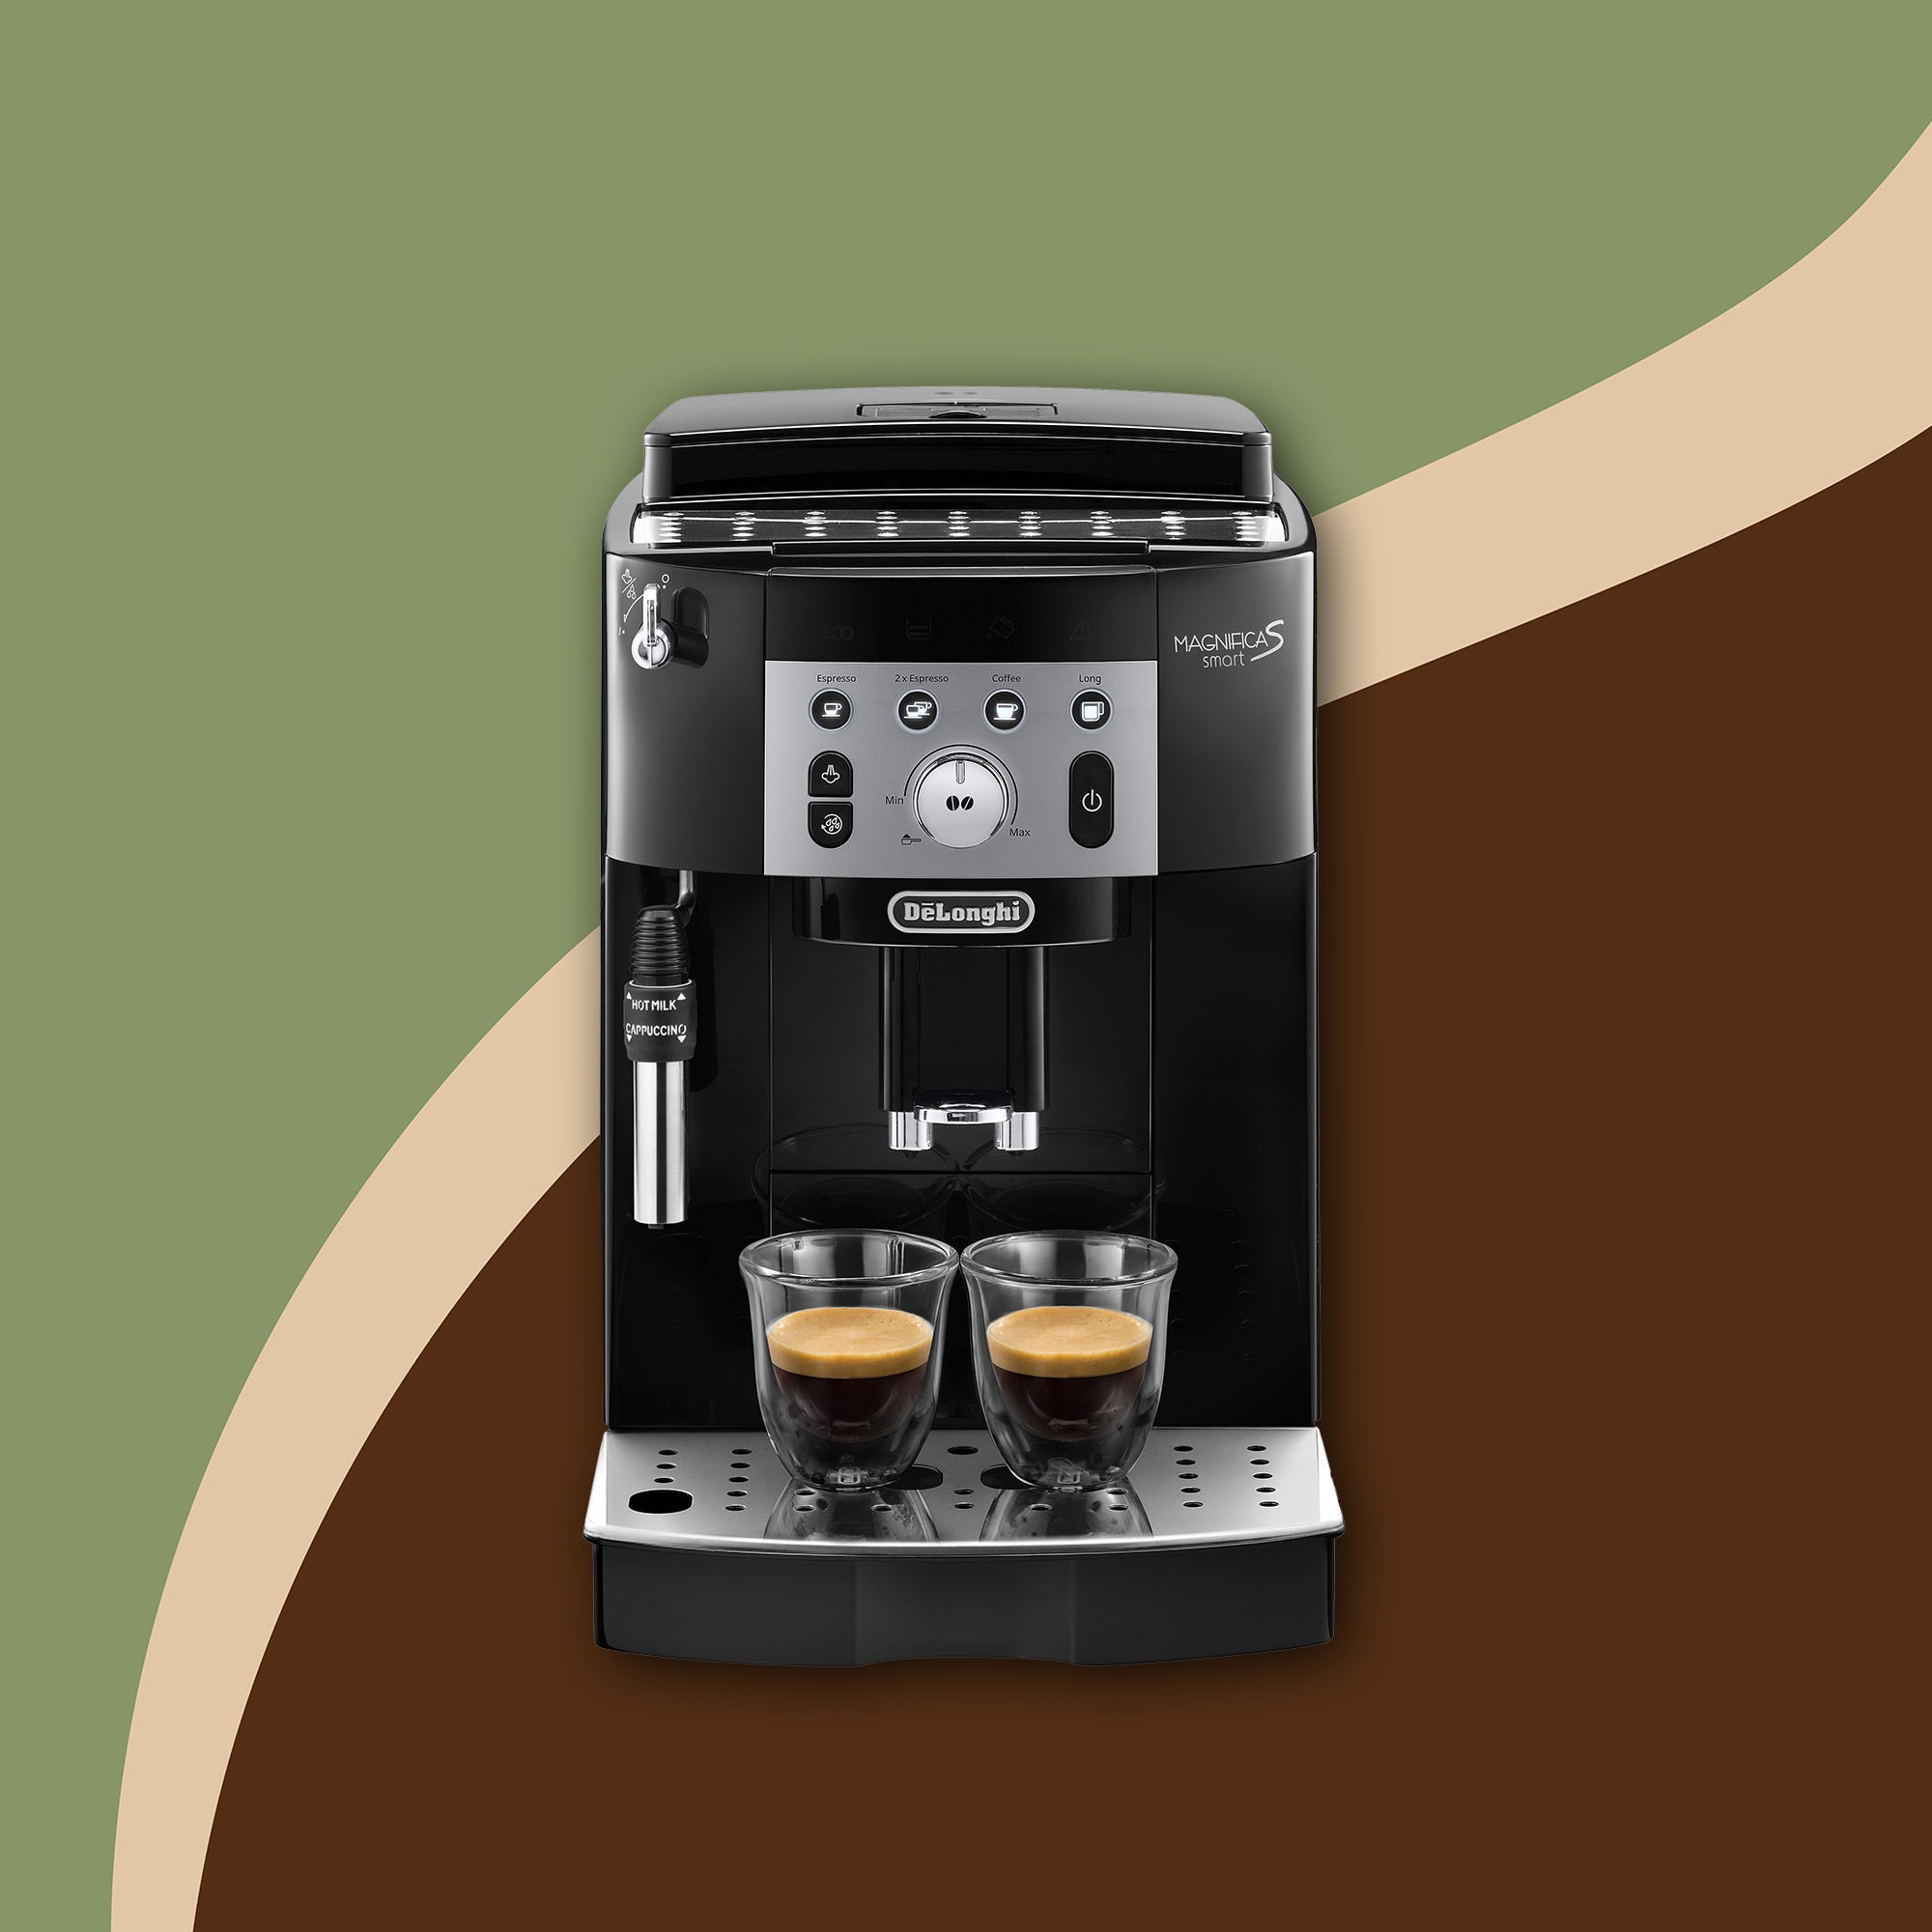 Cartouche filtrante Délonghi – Morgane café MHD - A changer